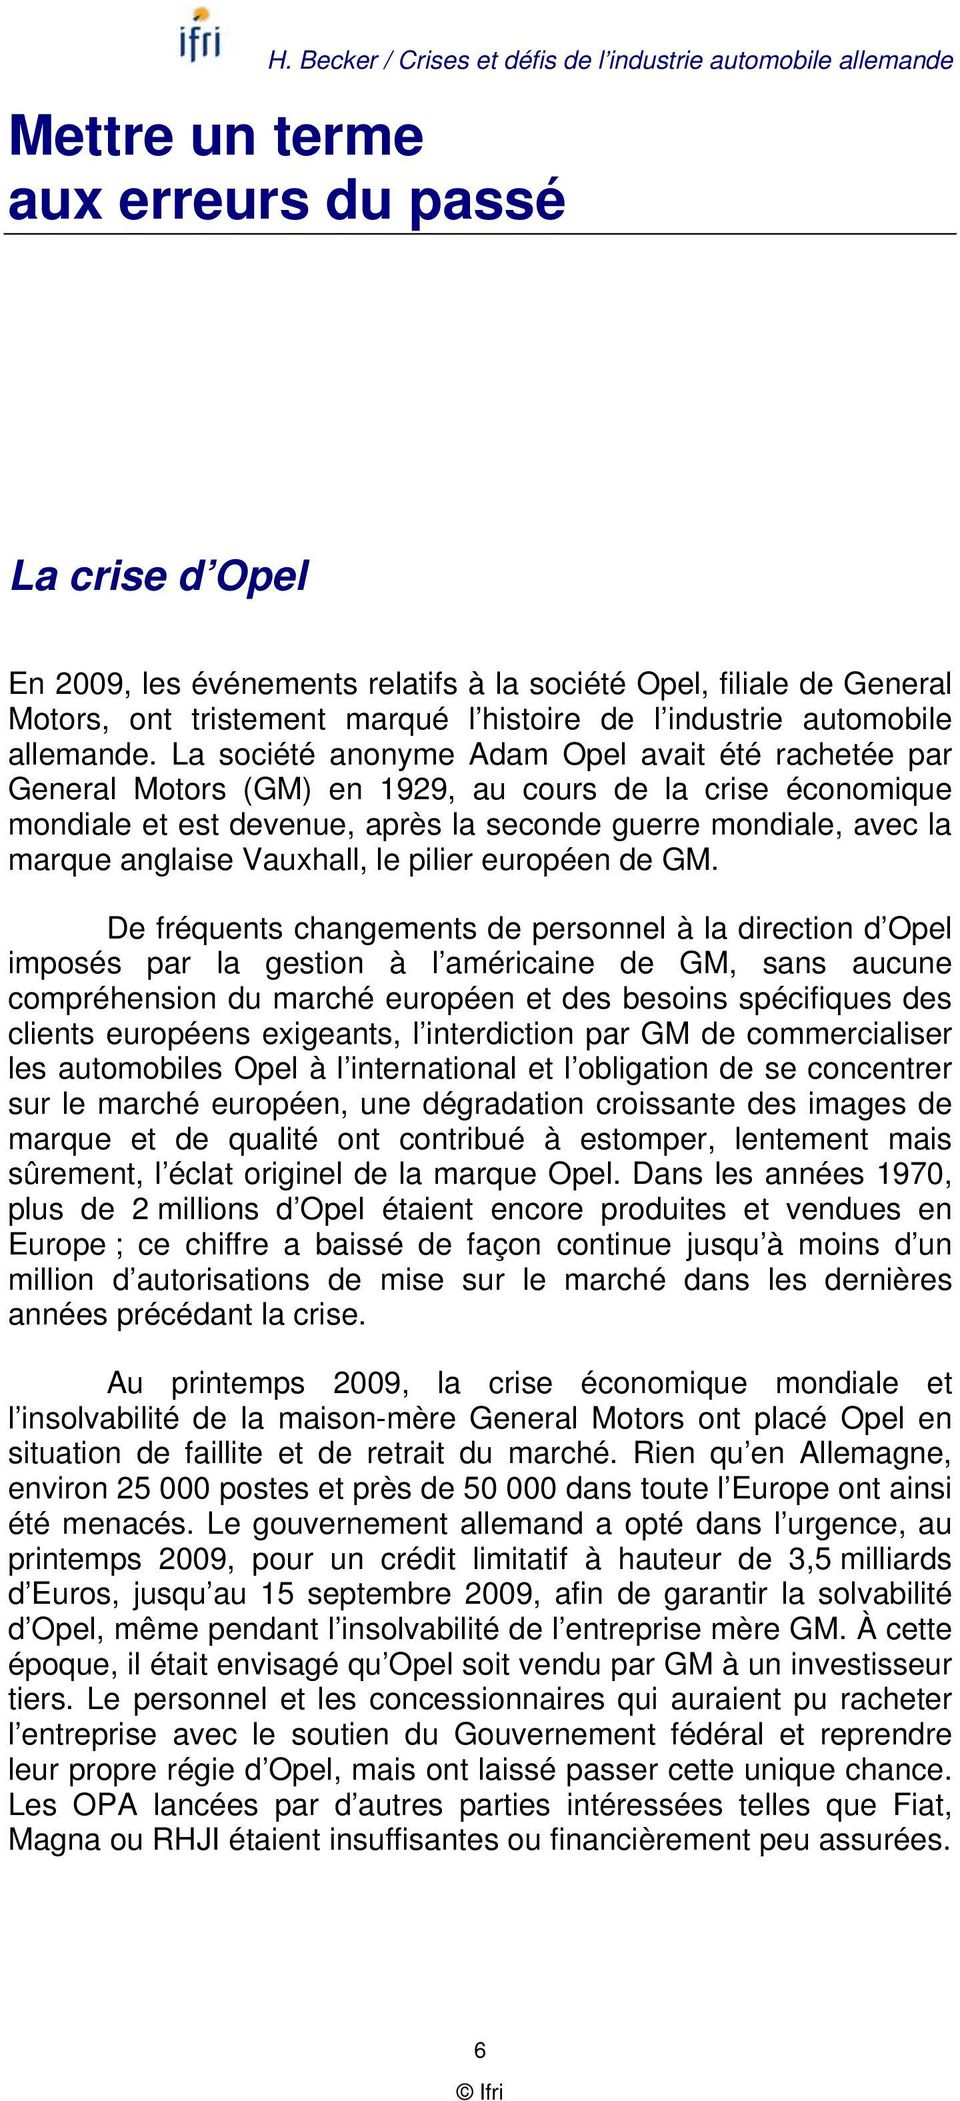 La société anonyme Adam Opel avait été rachetée par General Motors (GM) en 1929, au cours de la crise économique mondiale et est devenue, après la seconde guerre mondiale, avec la marque anglaise